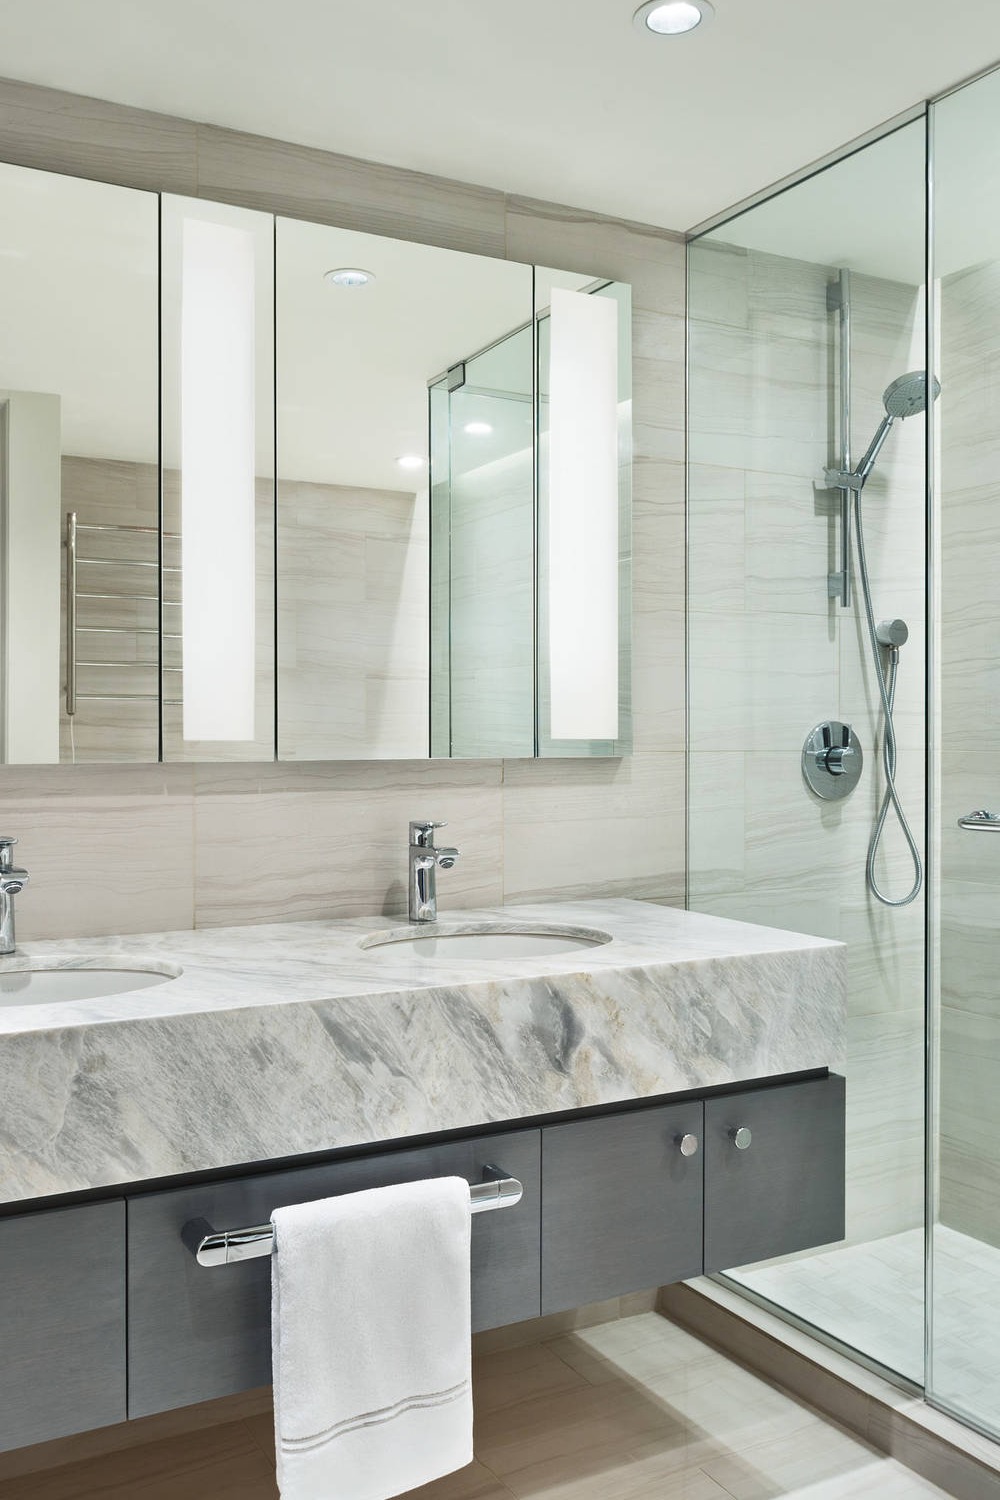 Modern Bathroom Backsplash Ideas Bathroom Sink White Bathroom Wood Marble Gray Ceramic Pattern